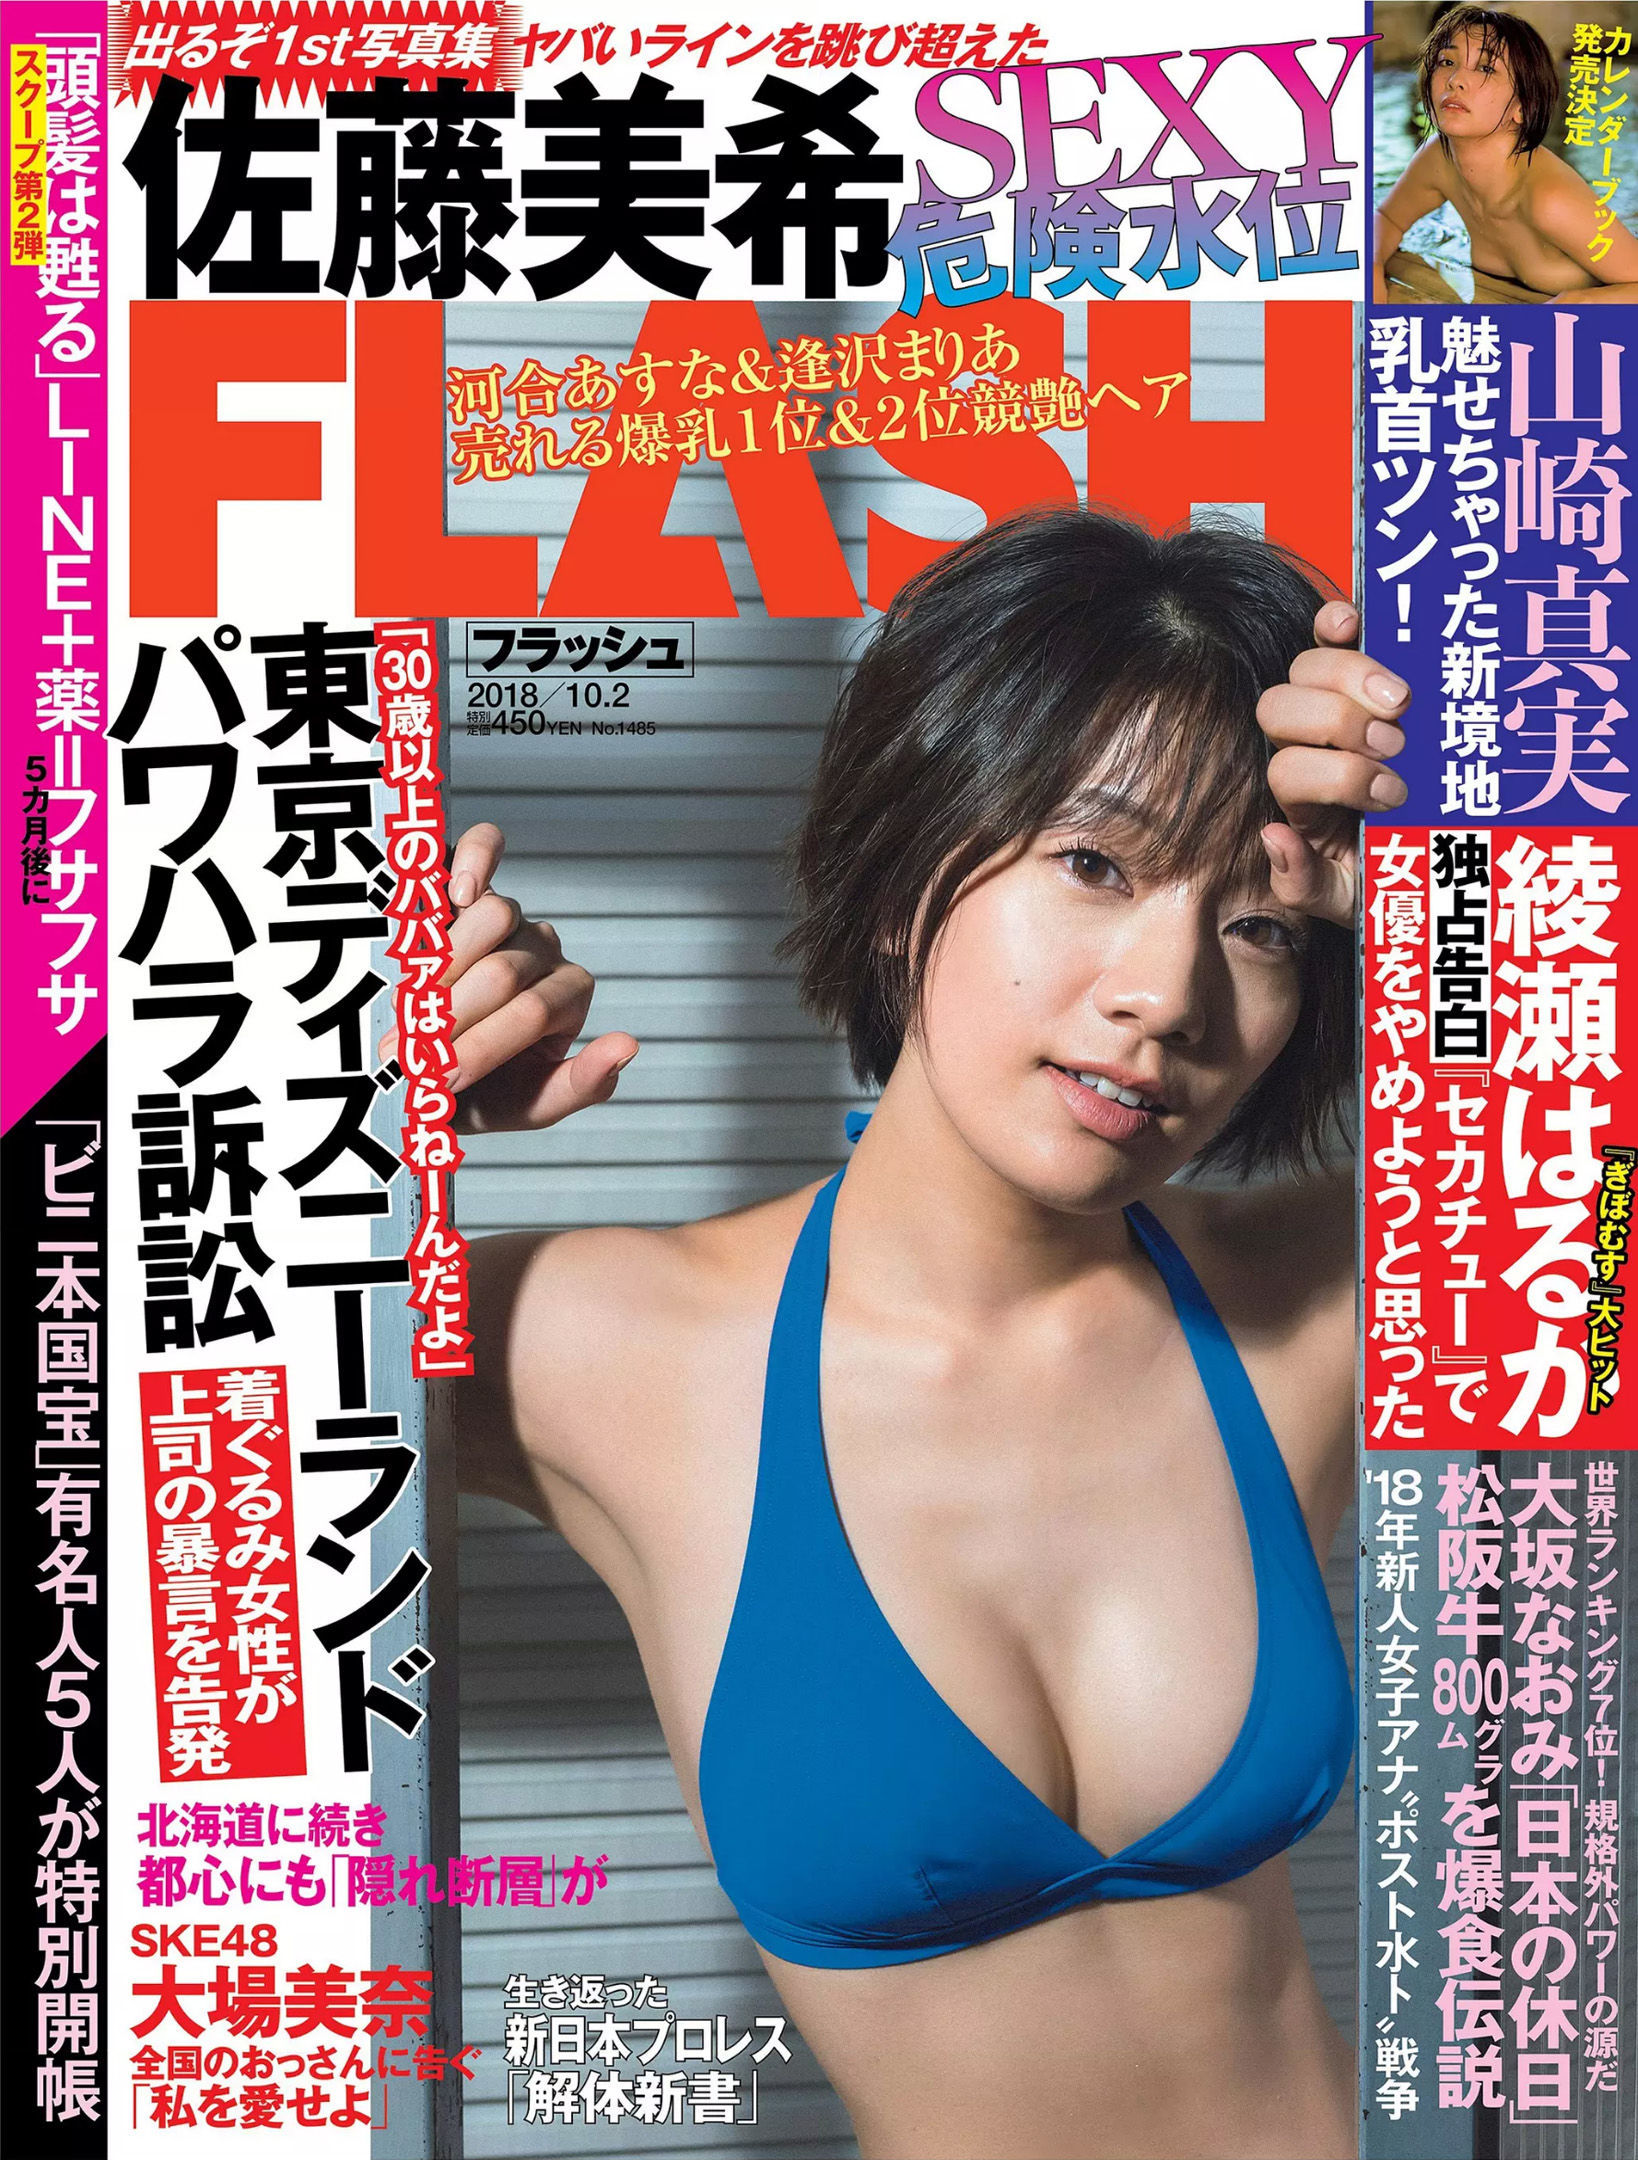 [FLASH]杂志:佐藤美希高品质绝版网图珍藏版(23P)